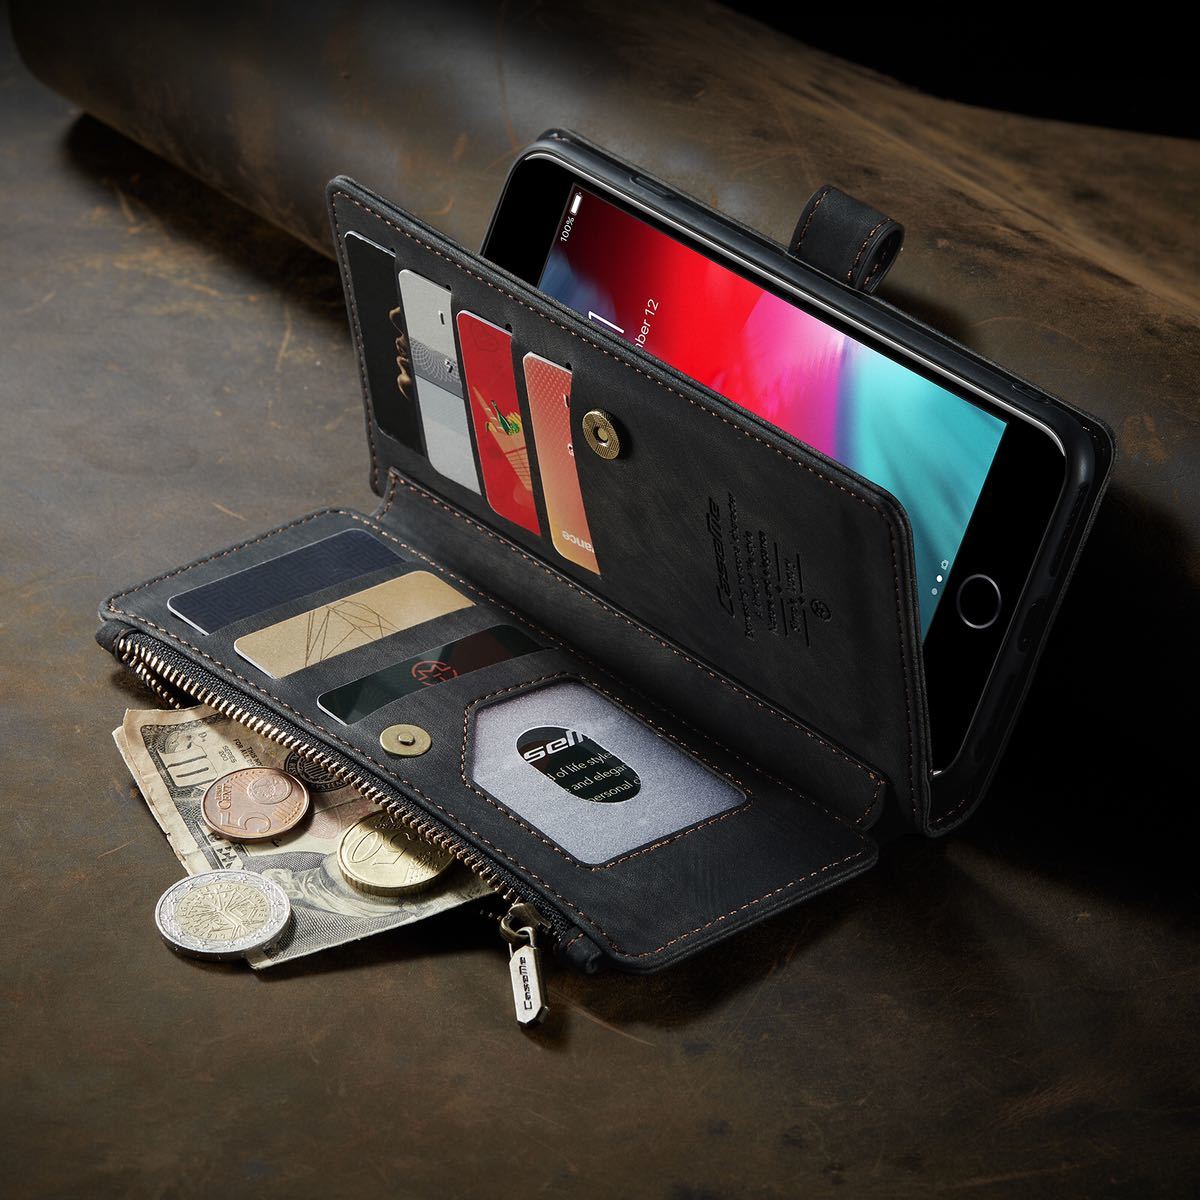 iphone6s レザーケース アイフォン6s ケース iphone6/6s レザーケース 手帳型 カード収納 お財布付き ブラック